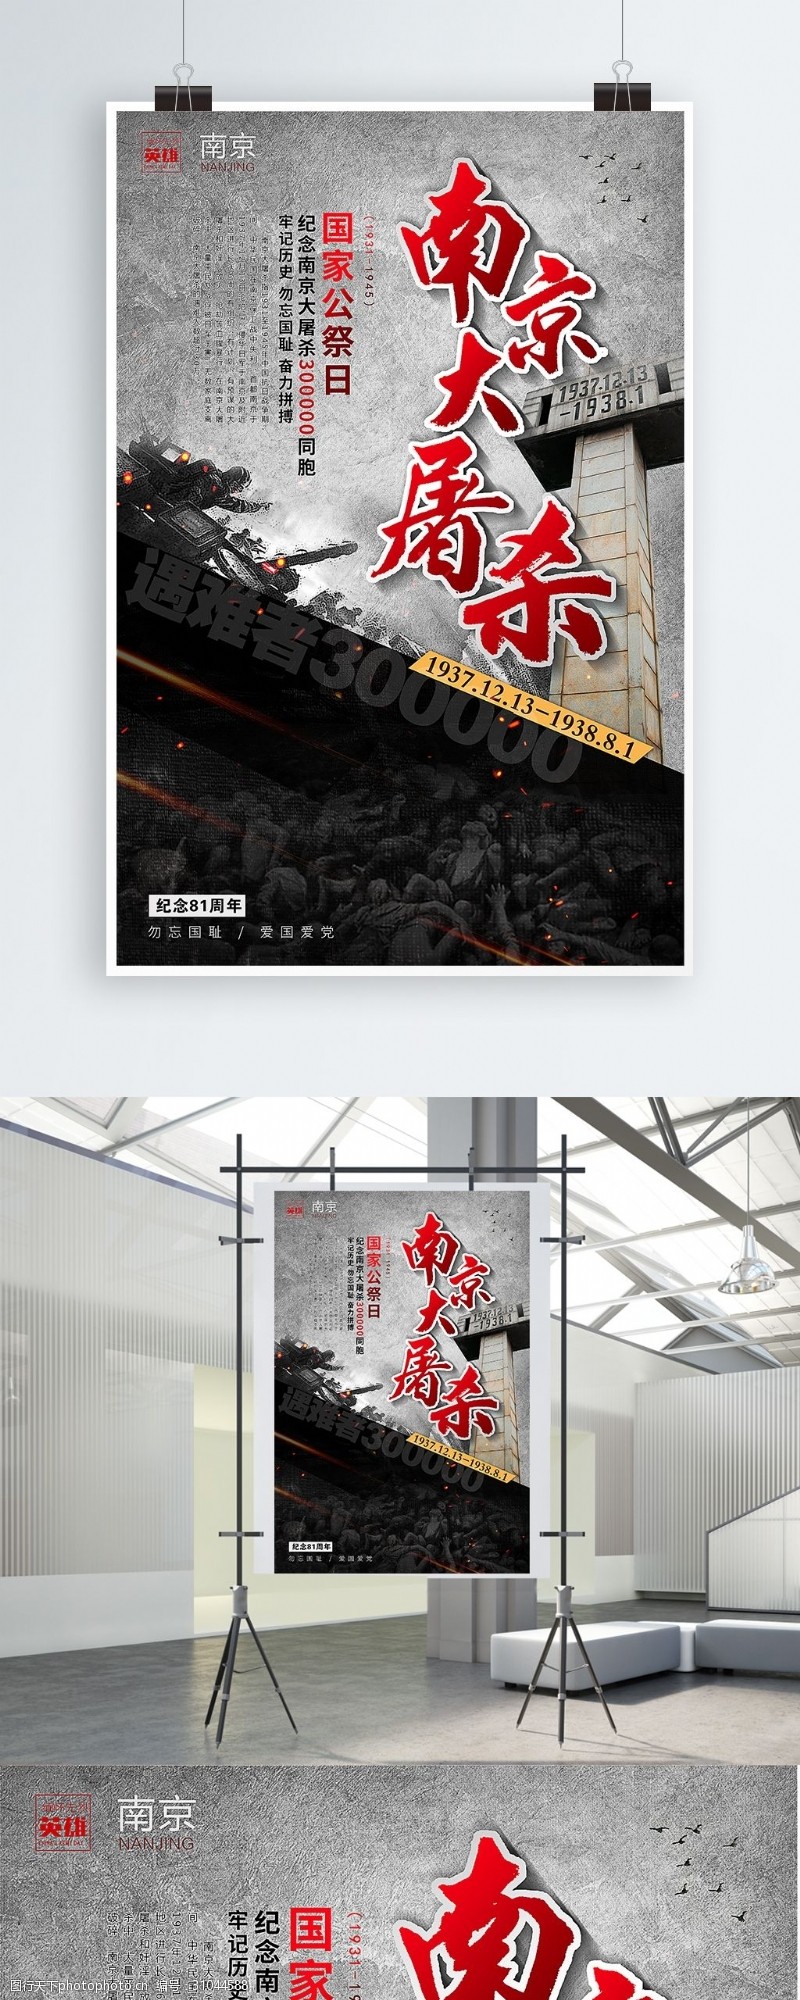 革命烈士南京大屠杀国家公祭日宣传海报